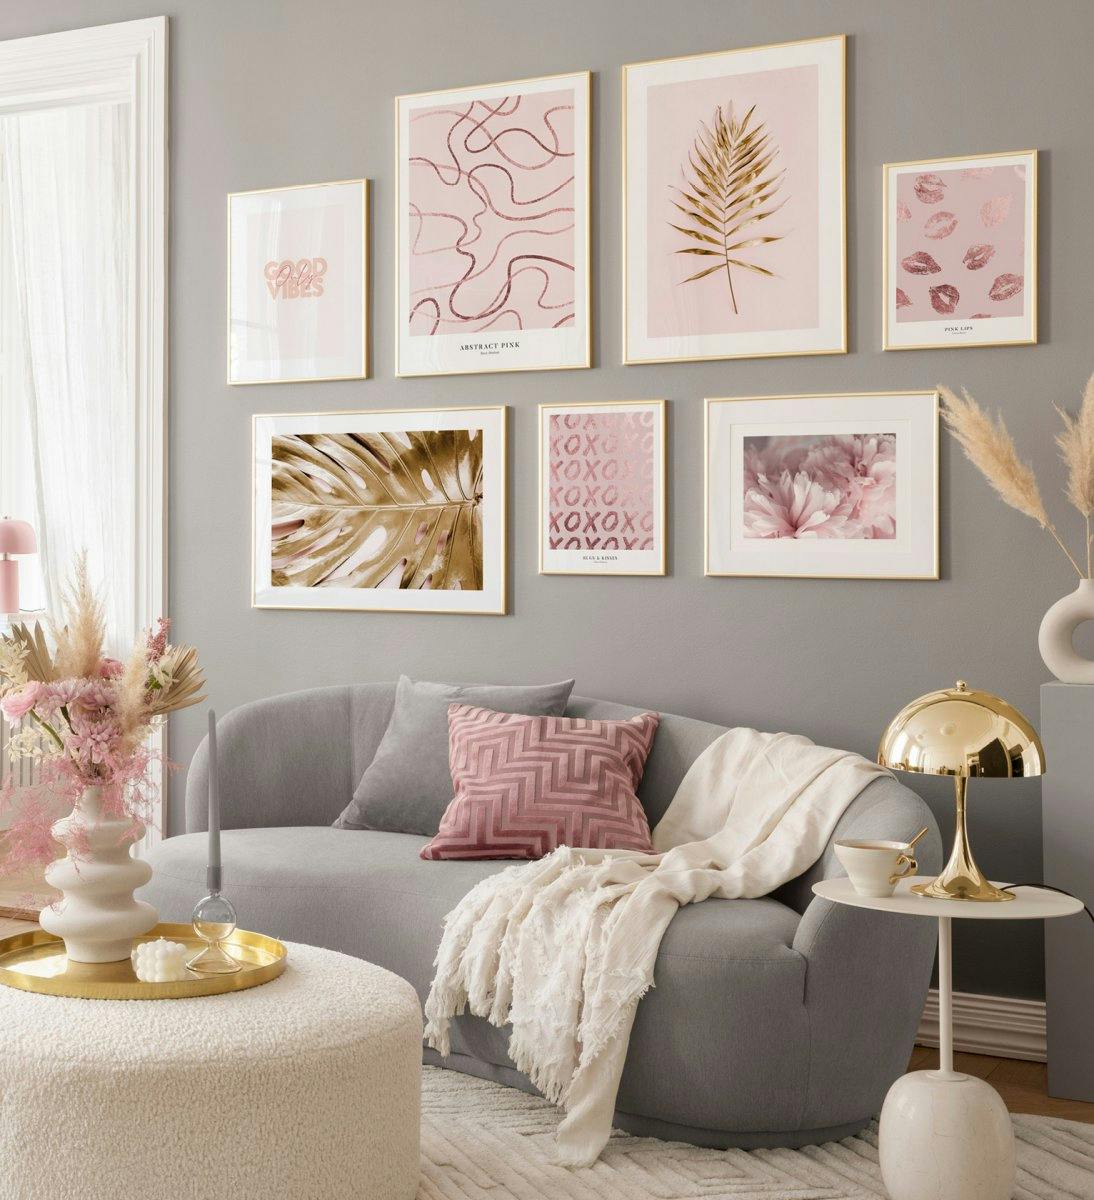 Arany képkeretekkel rendelkező rózsaszín és arany levél, valamint absztrakt vonalművészeti kép fal a nappaliba